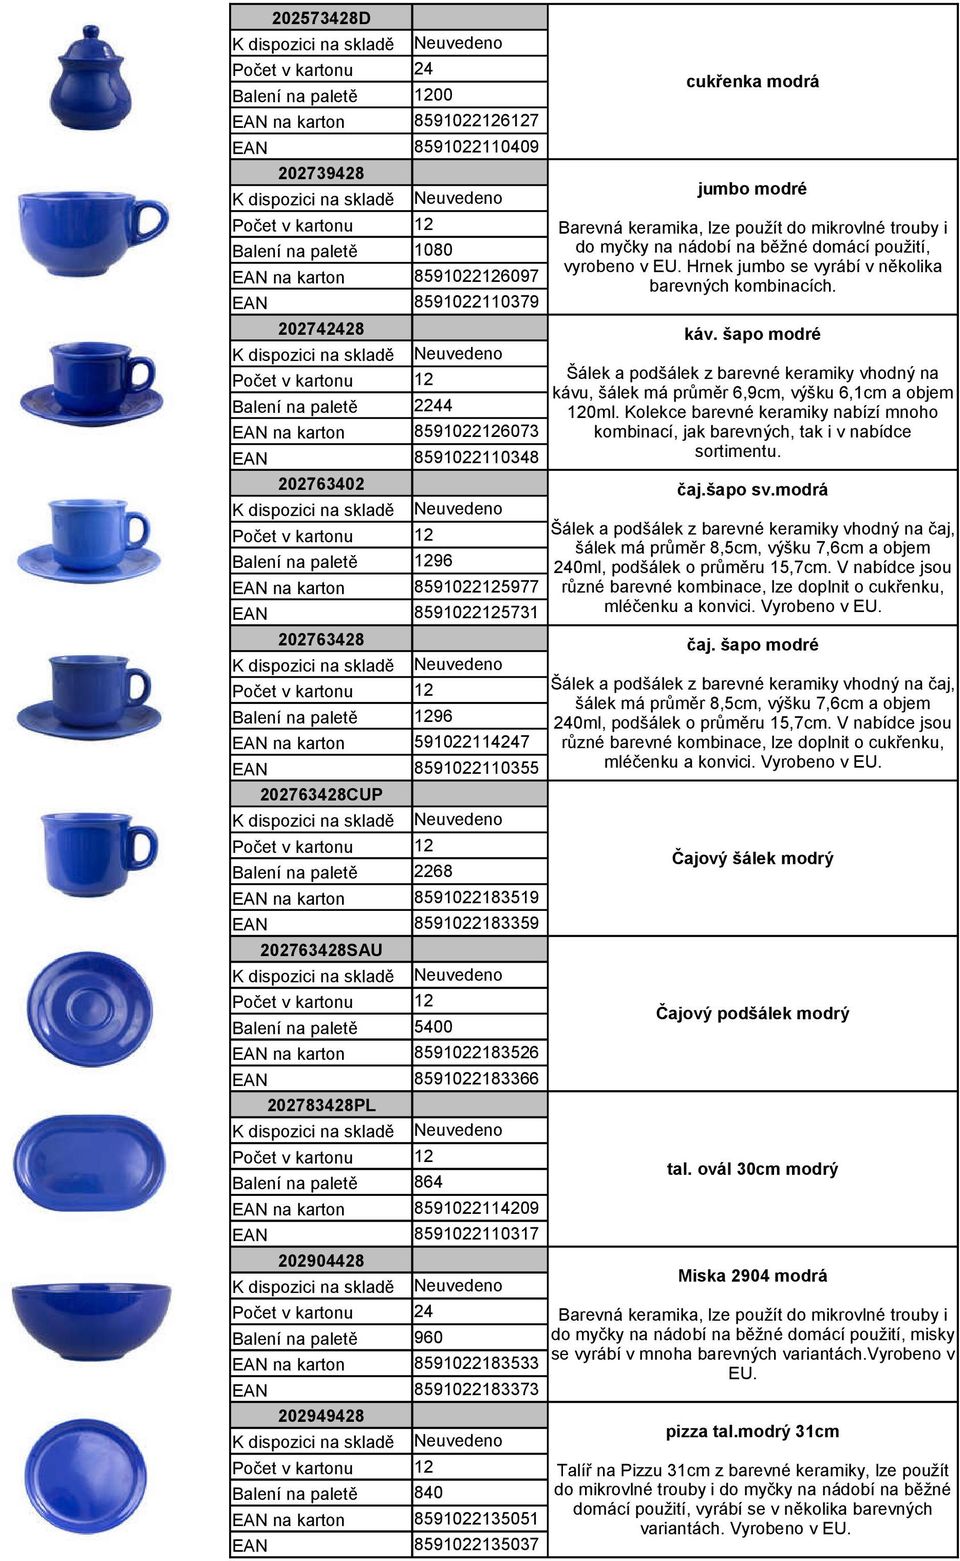 Hrnek jumbo se vyrábí v několika barevných kombinacích. čaj.šapo sv.modrá Šálek a podšálek z barevné keramiky vhodný na čaj, šálek má průměr,5cm, výšku 7,cm a objem 9 0ml, podšálek o průměru 15,7cm.